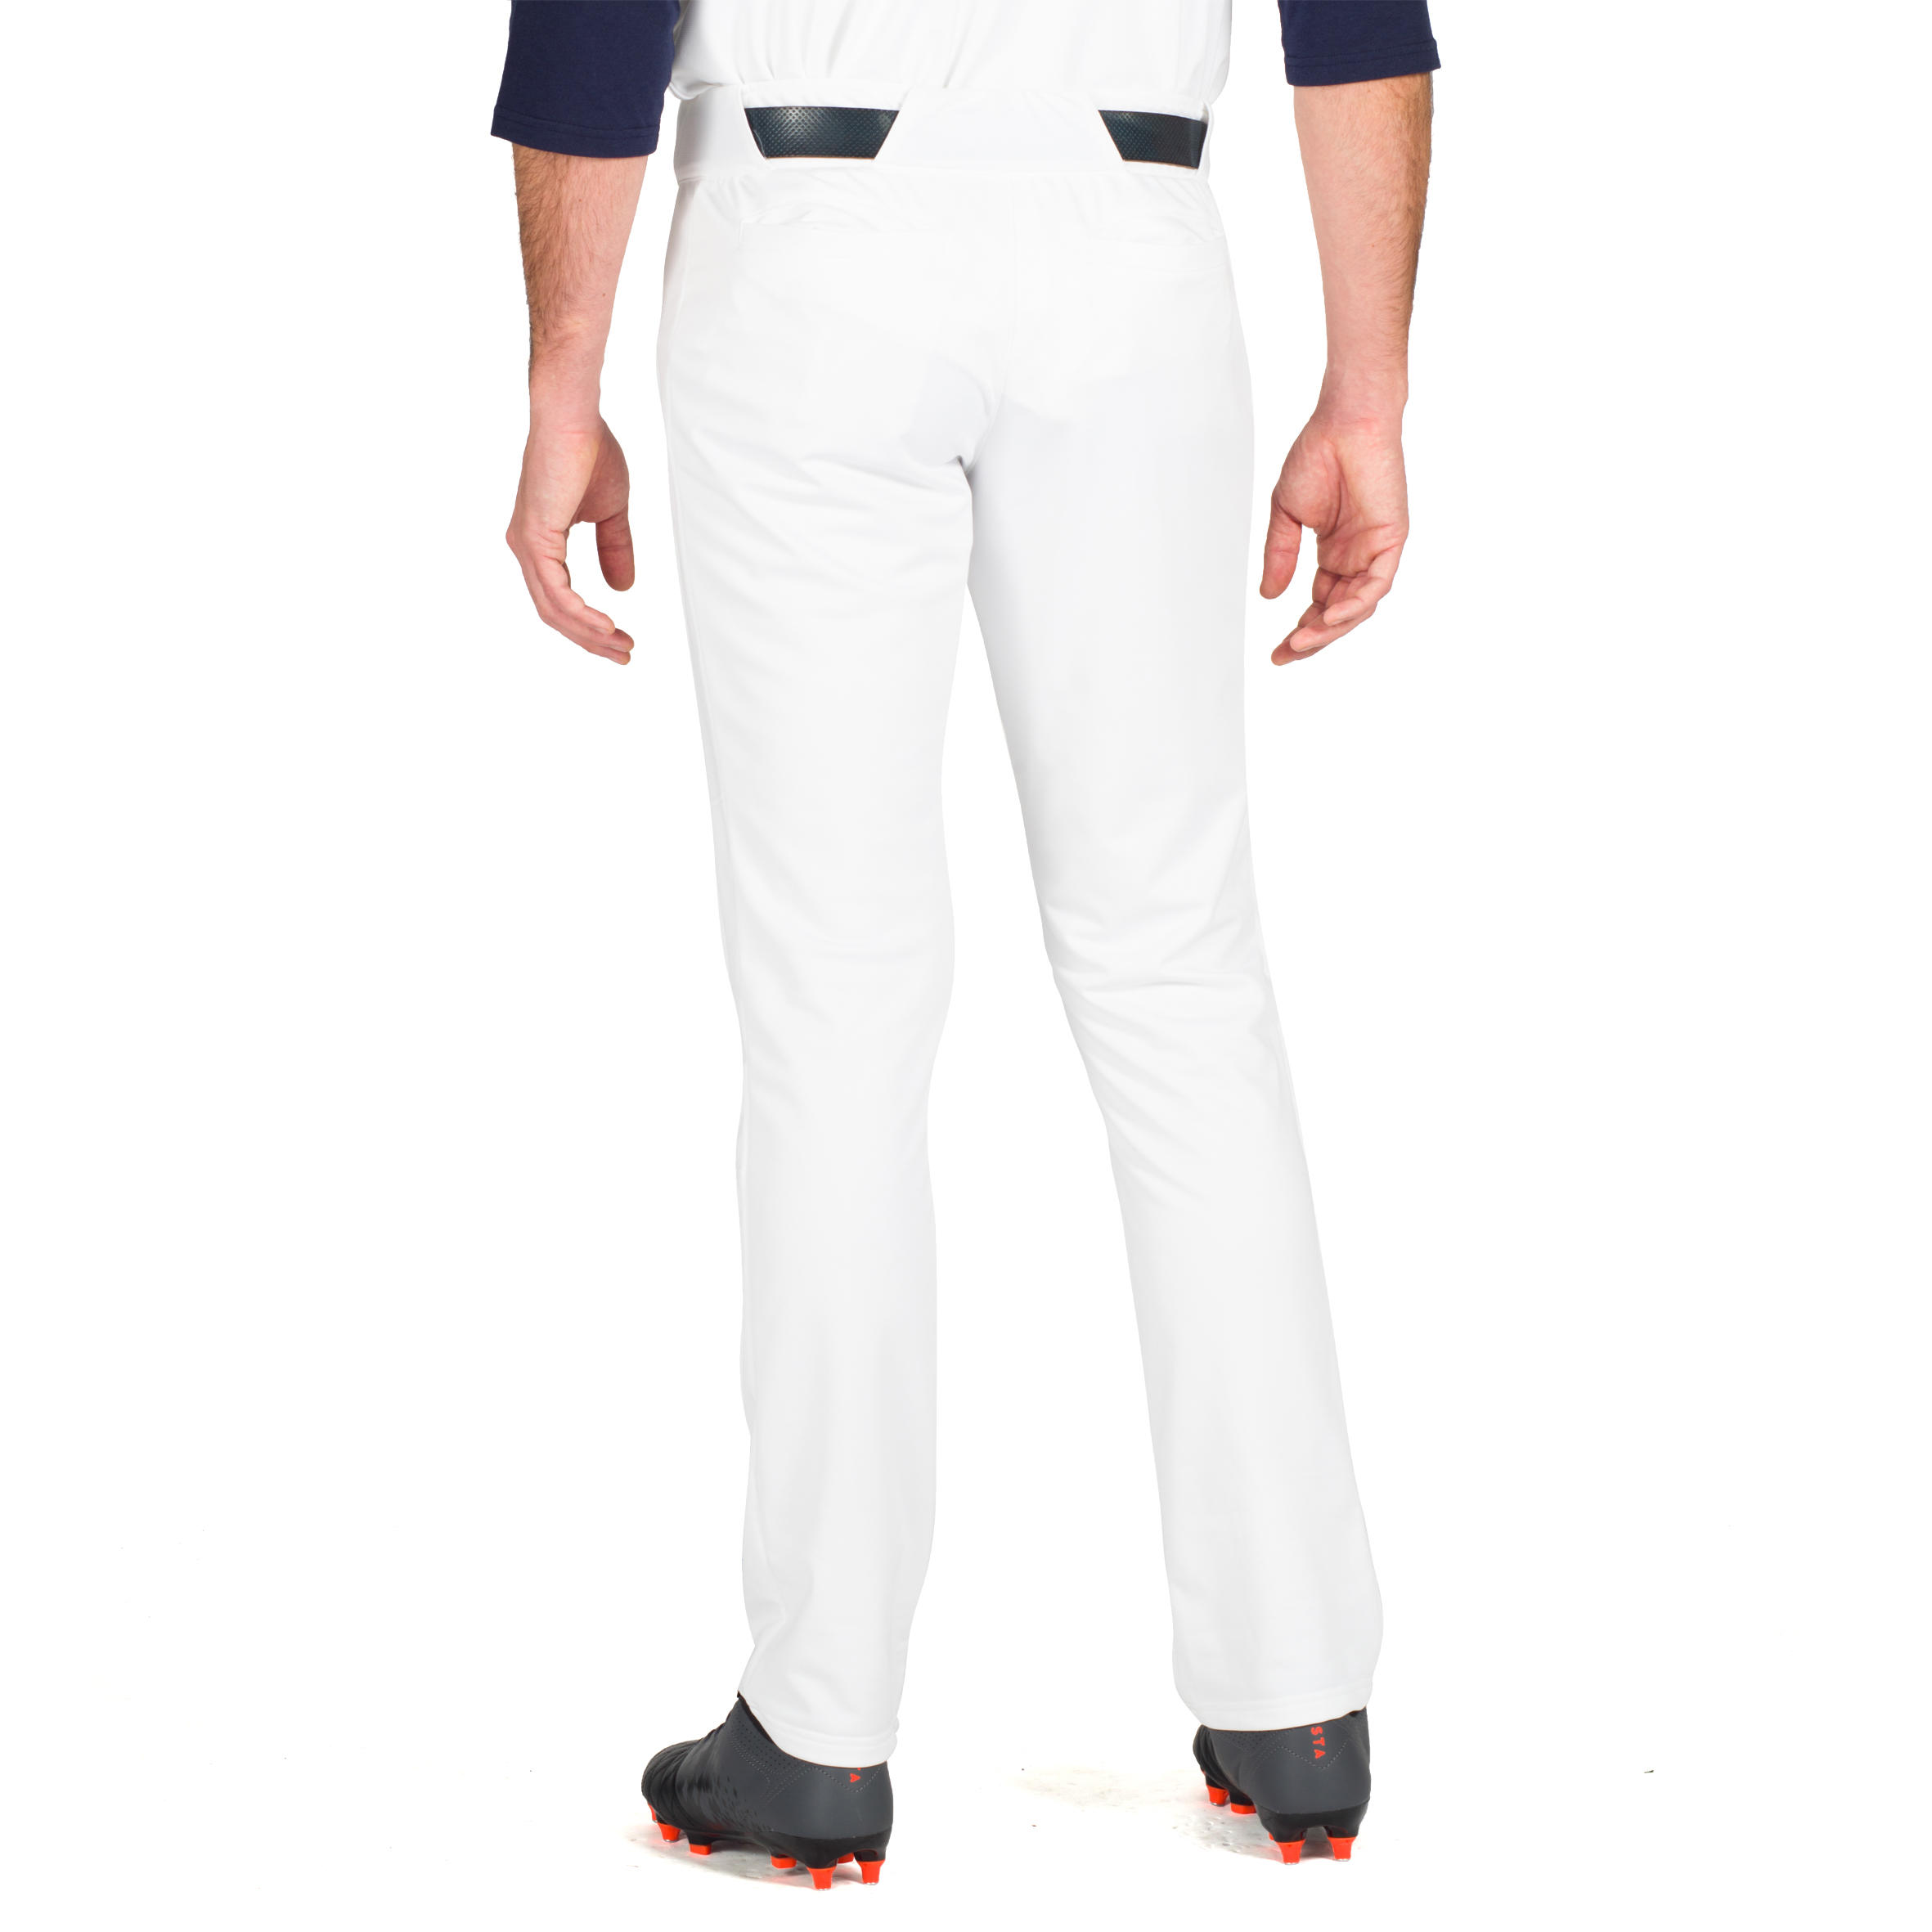 BA 550 Adult Baseball Pants - White 9/11